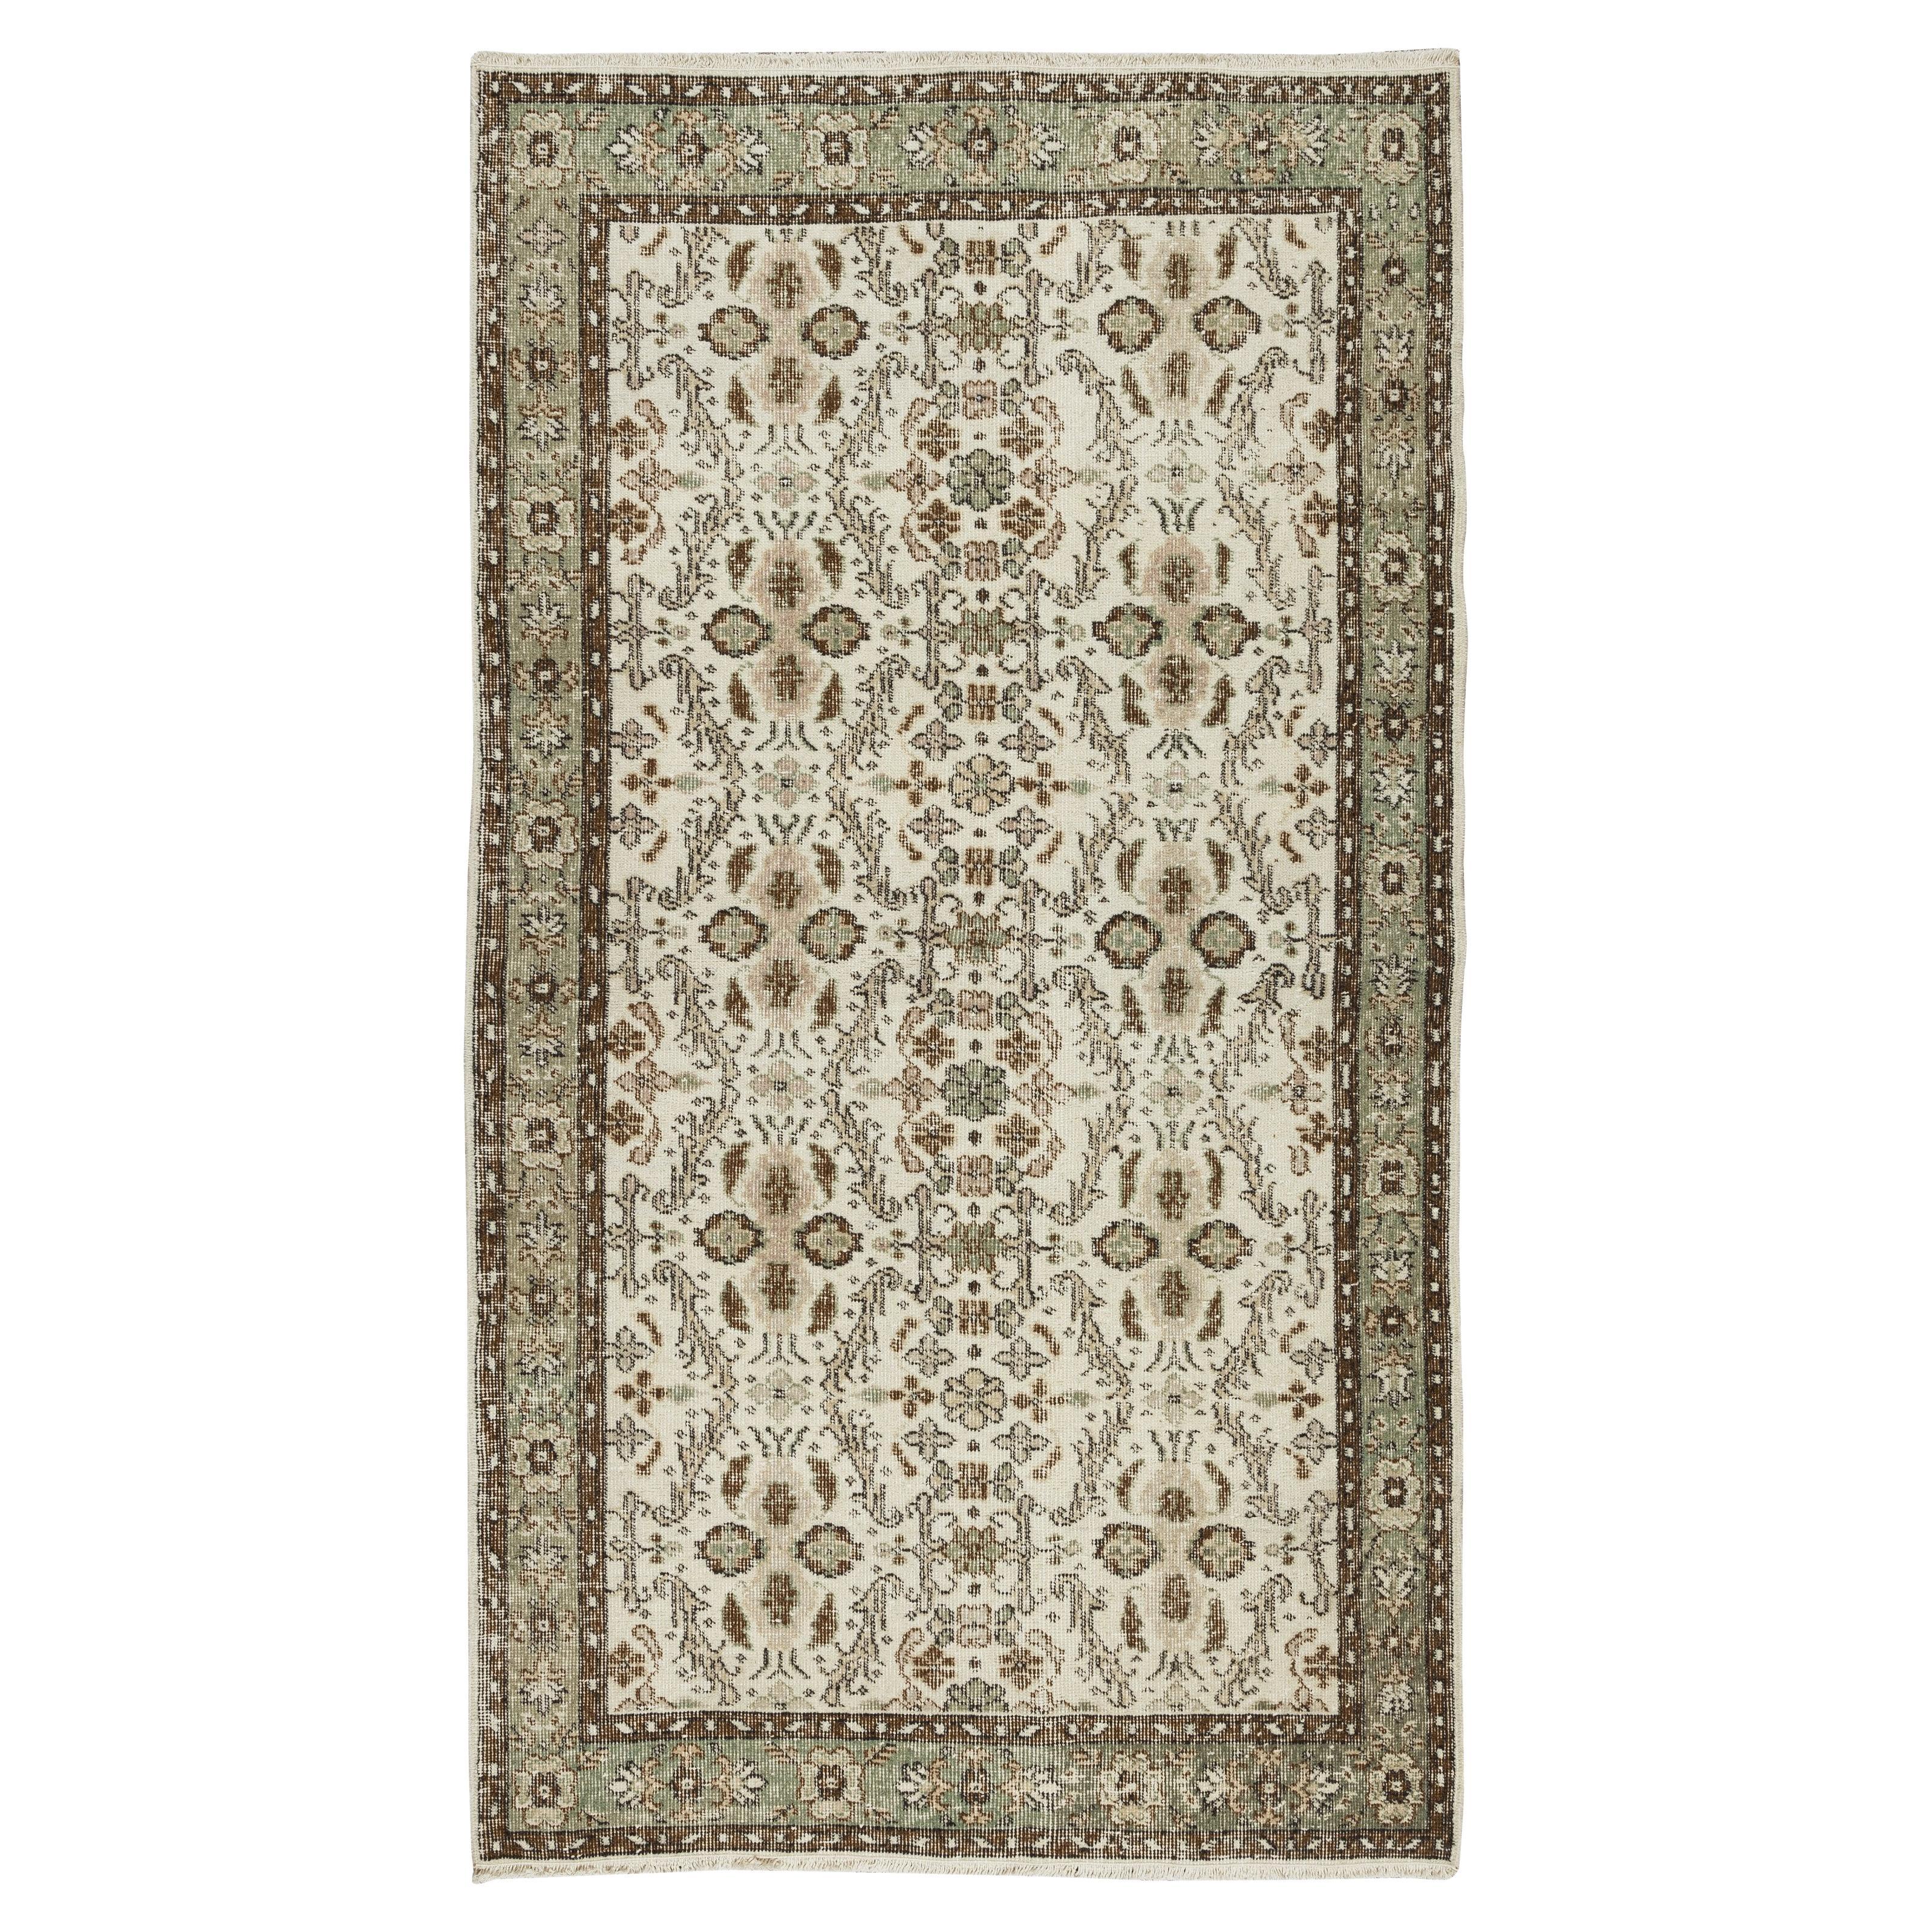 4x7 Ft Vintage Handgefertigter türkischer Akzent-Teppich, floral gemusterte Bodenbezug